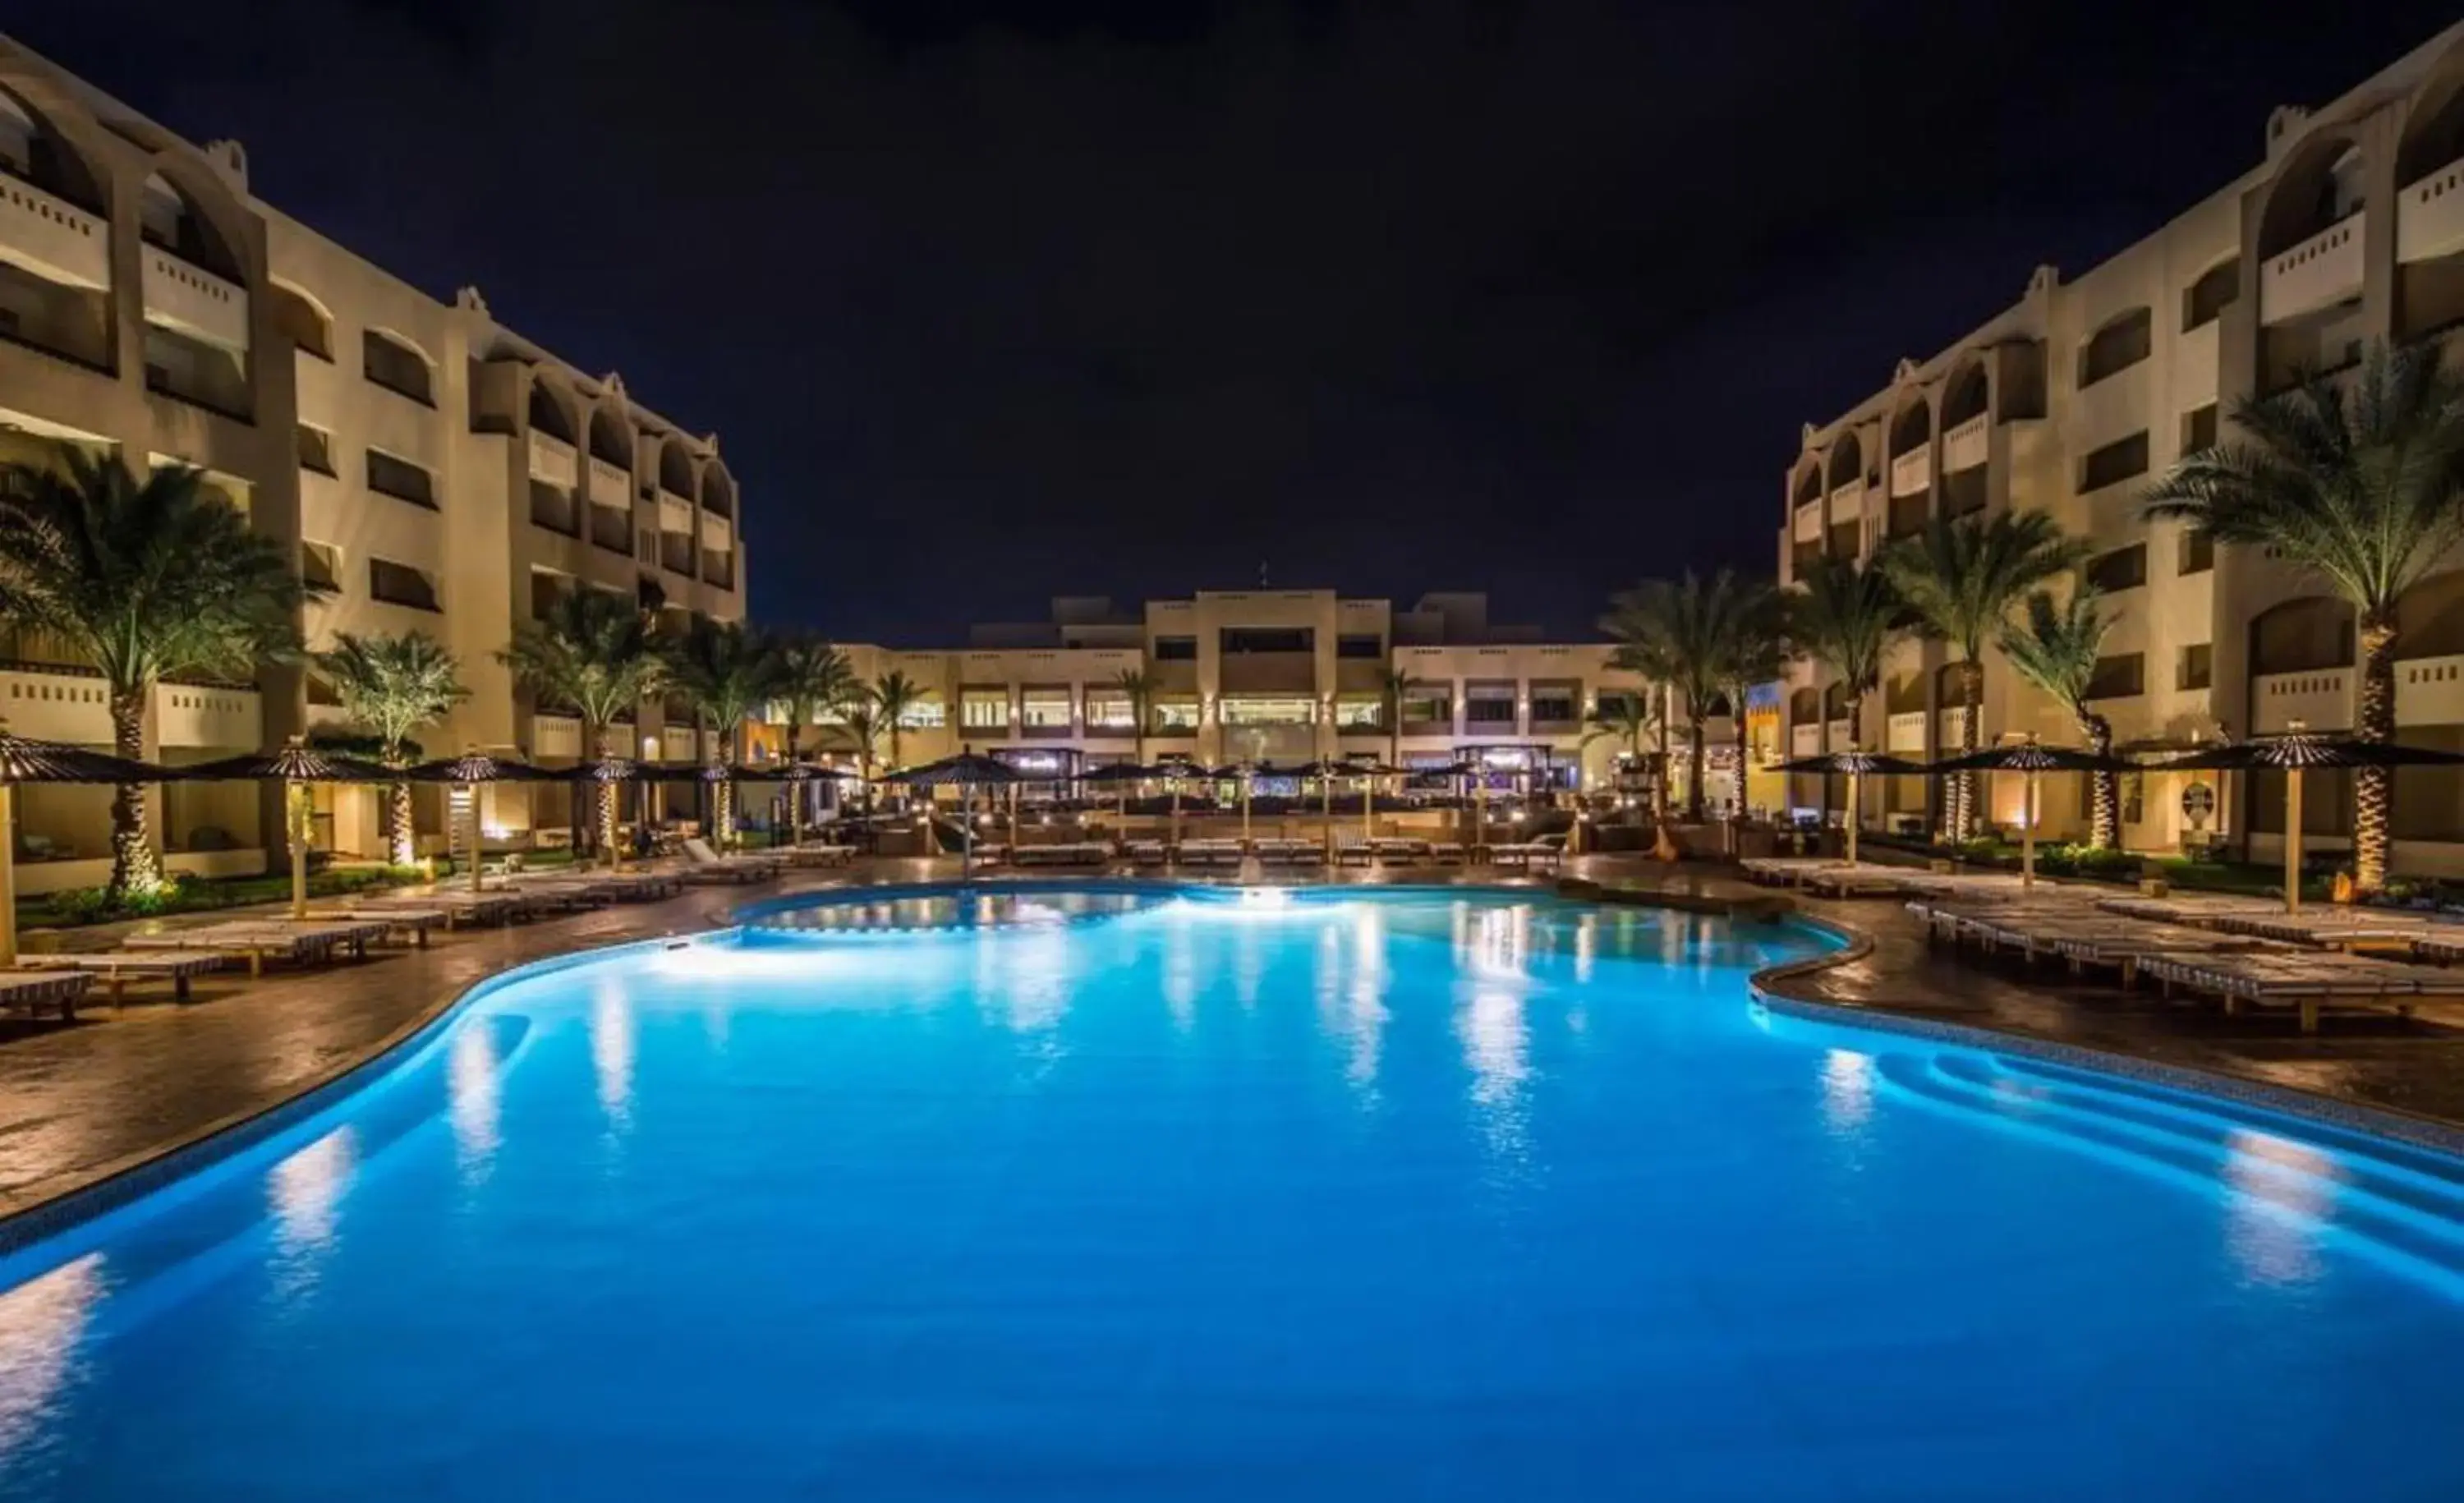 Pool view, Swimming Pool in El Karma Beach Resort & Aqua Park - Hurghada